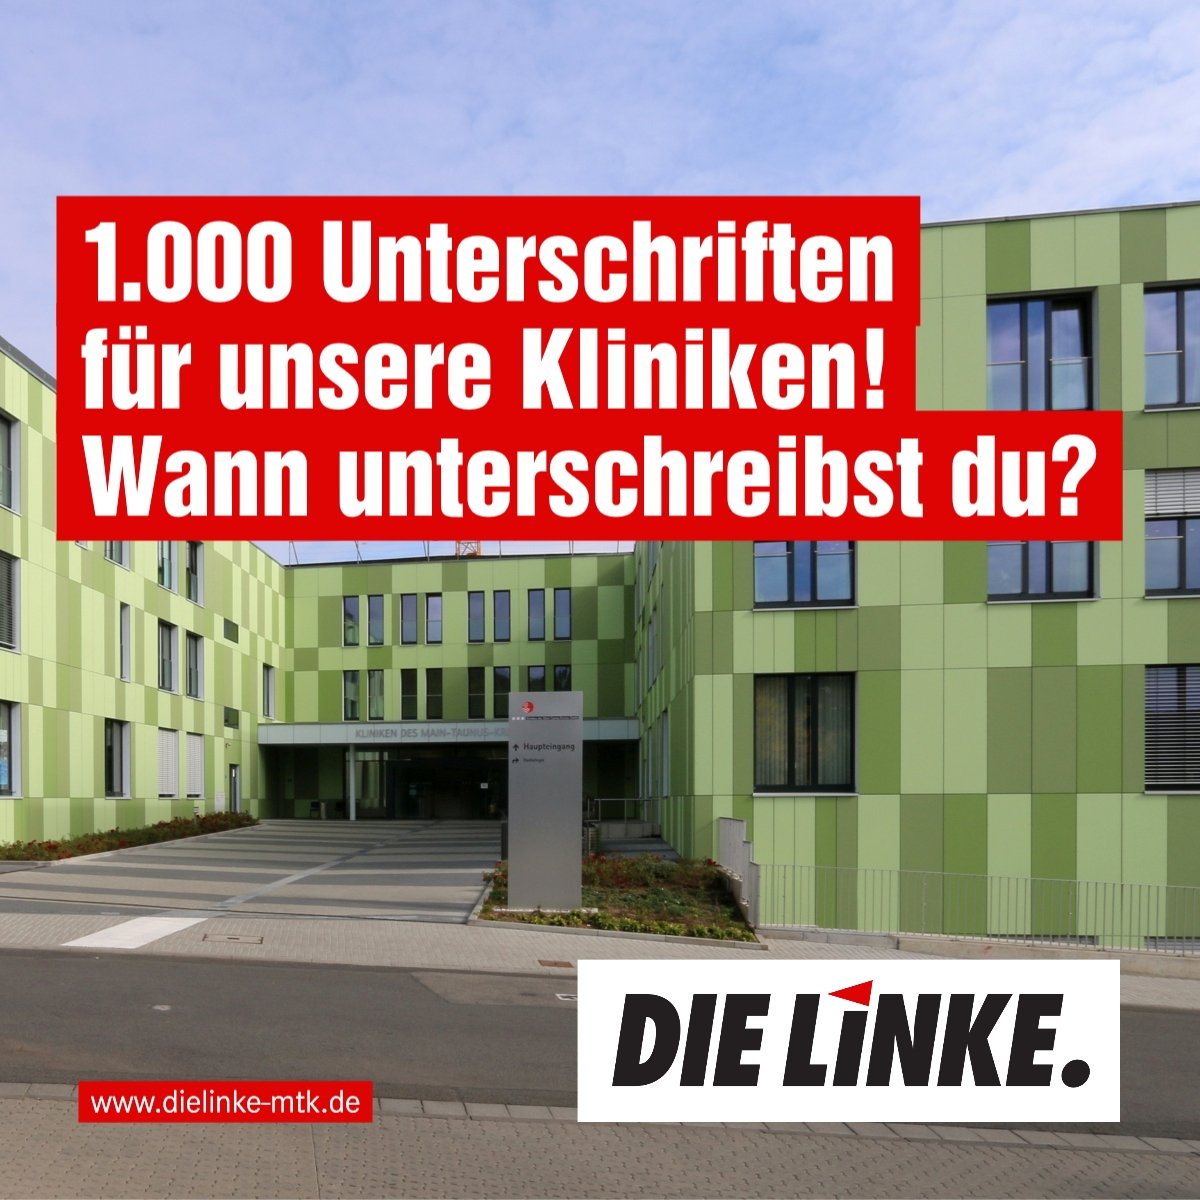 Ein Foto der Hofheimer Kreisklinik, einem grünen Gebäude. Dazu der Text: 1.000 Unterschriften für unsere Kliniken! Wann unterschreibst du?